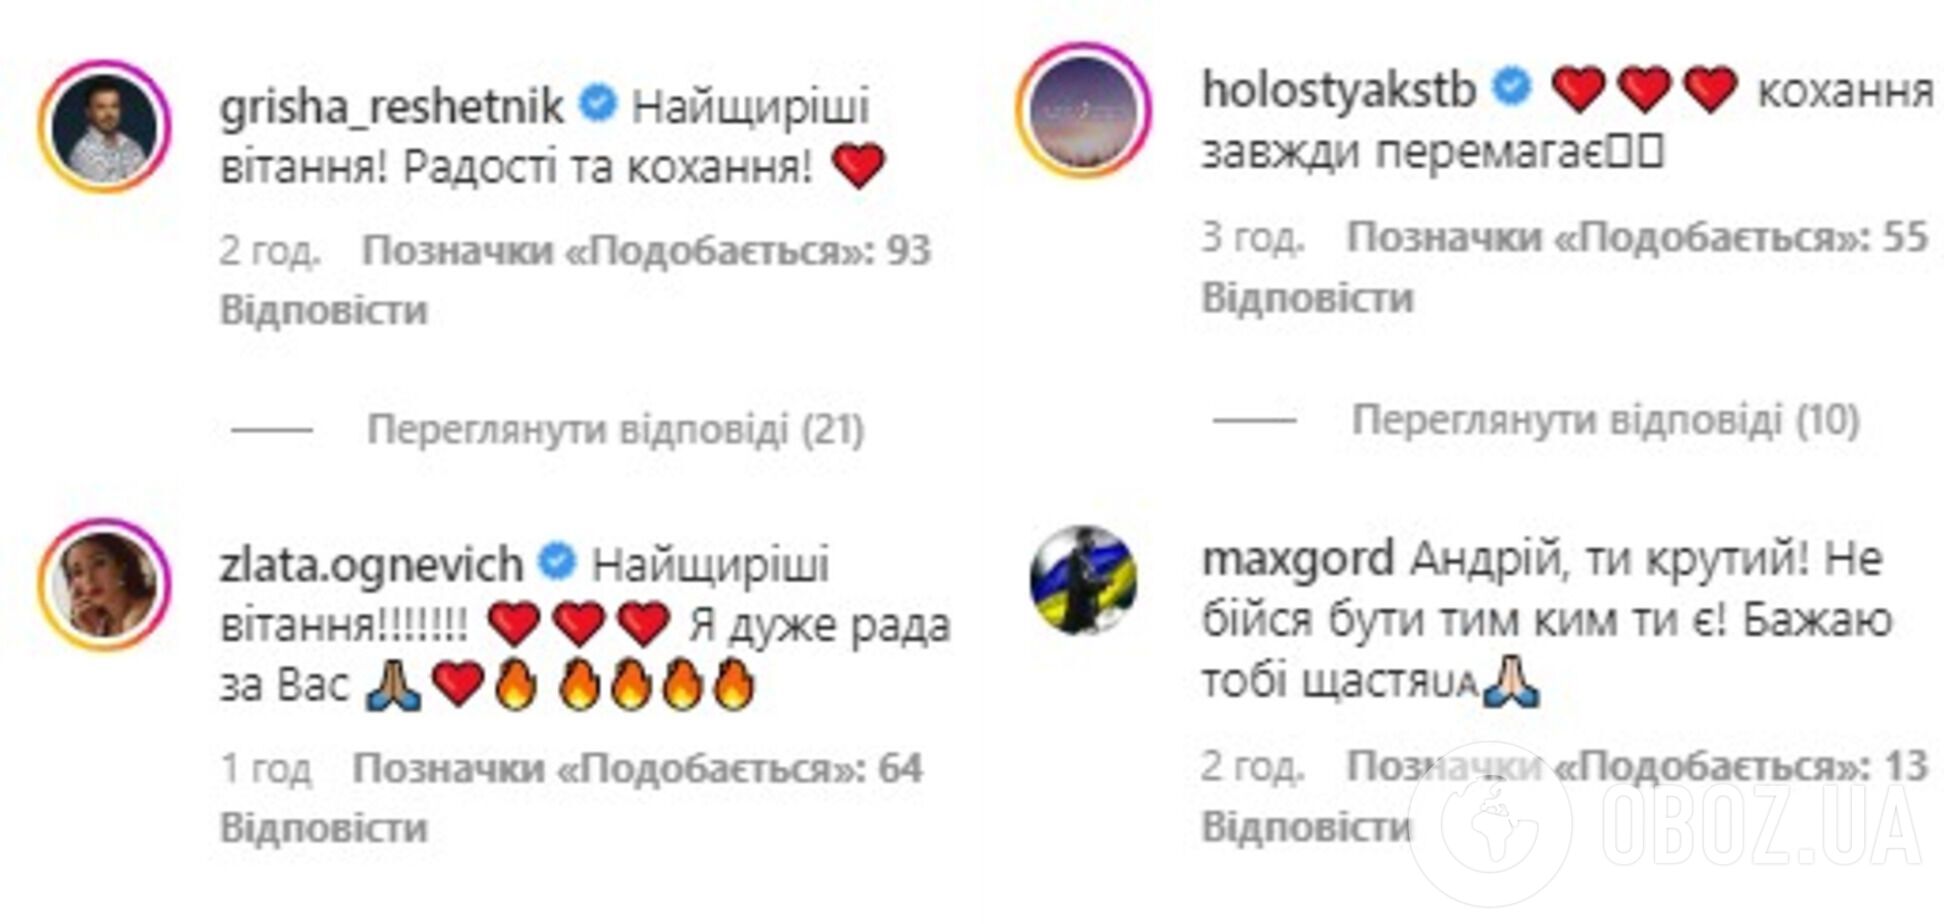 Комментарии под постом Хветкевича в Instagram.